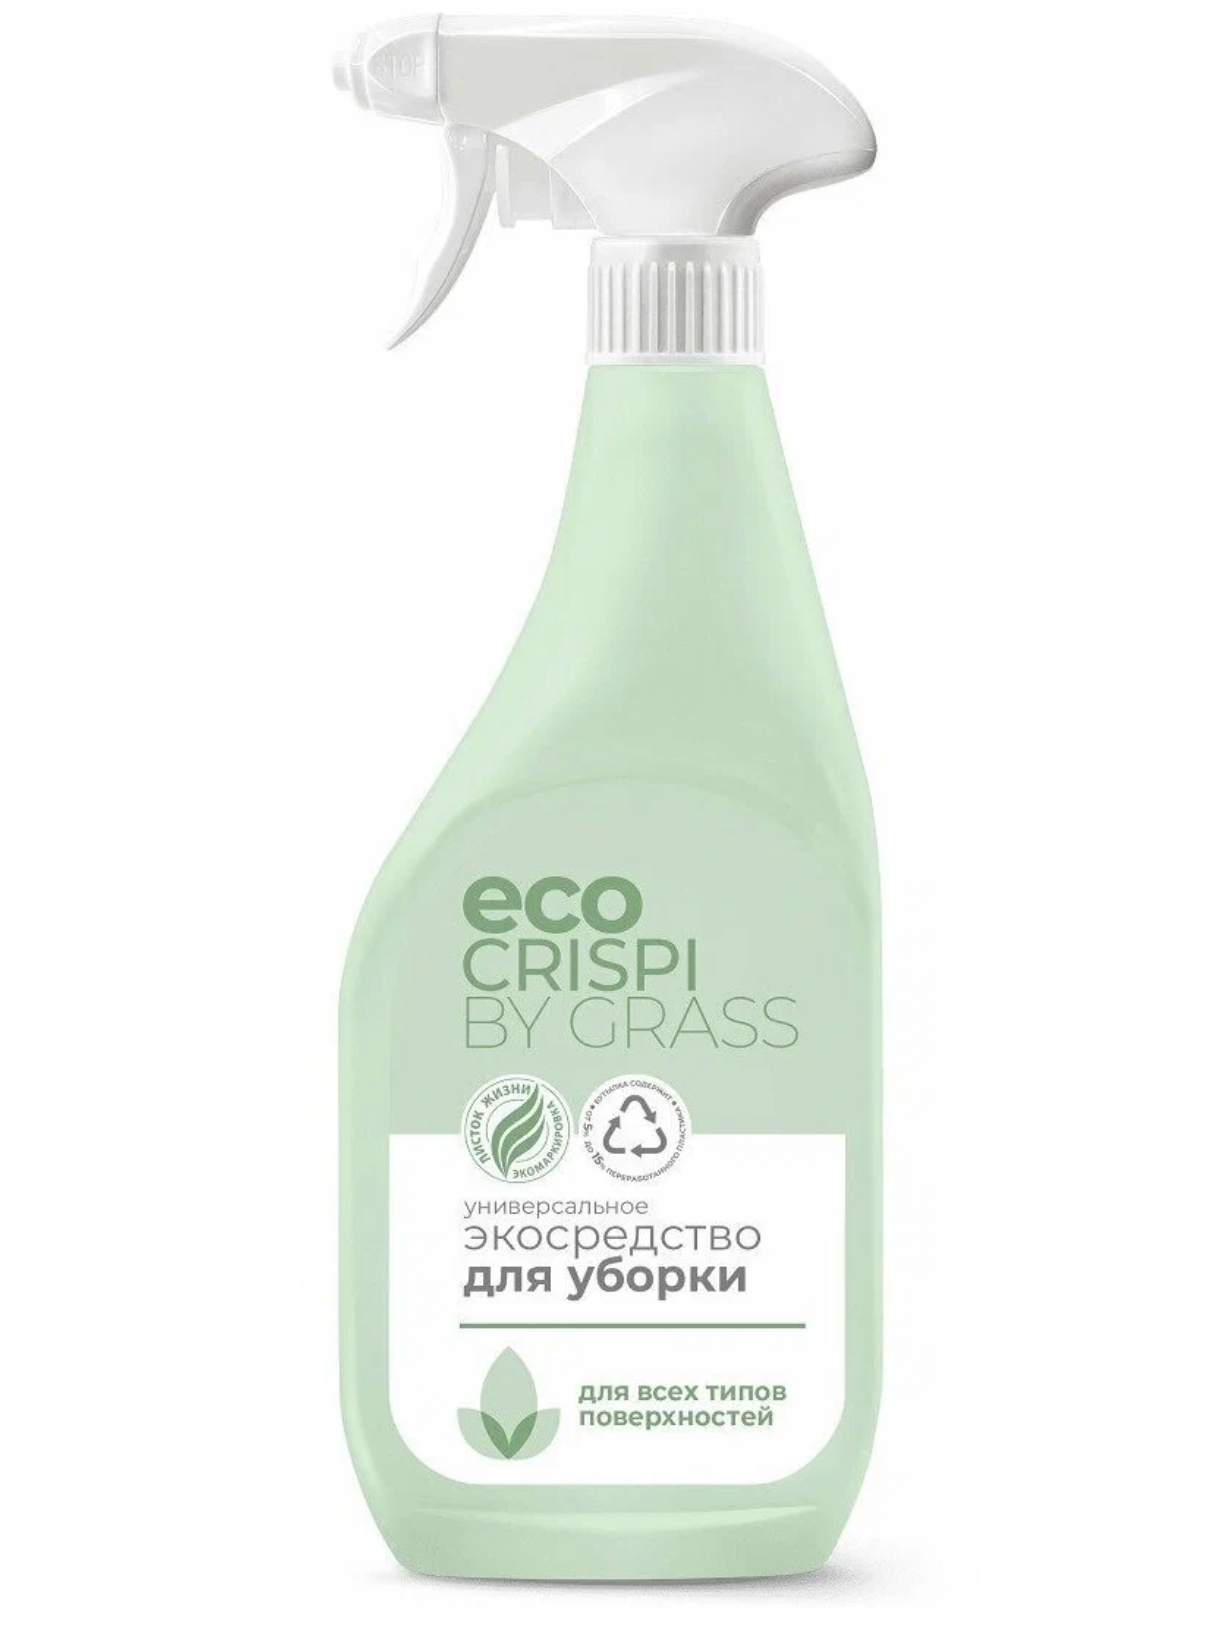   / Grass Eco Crispi -        600 